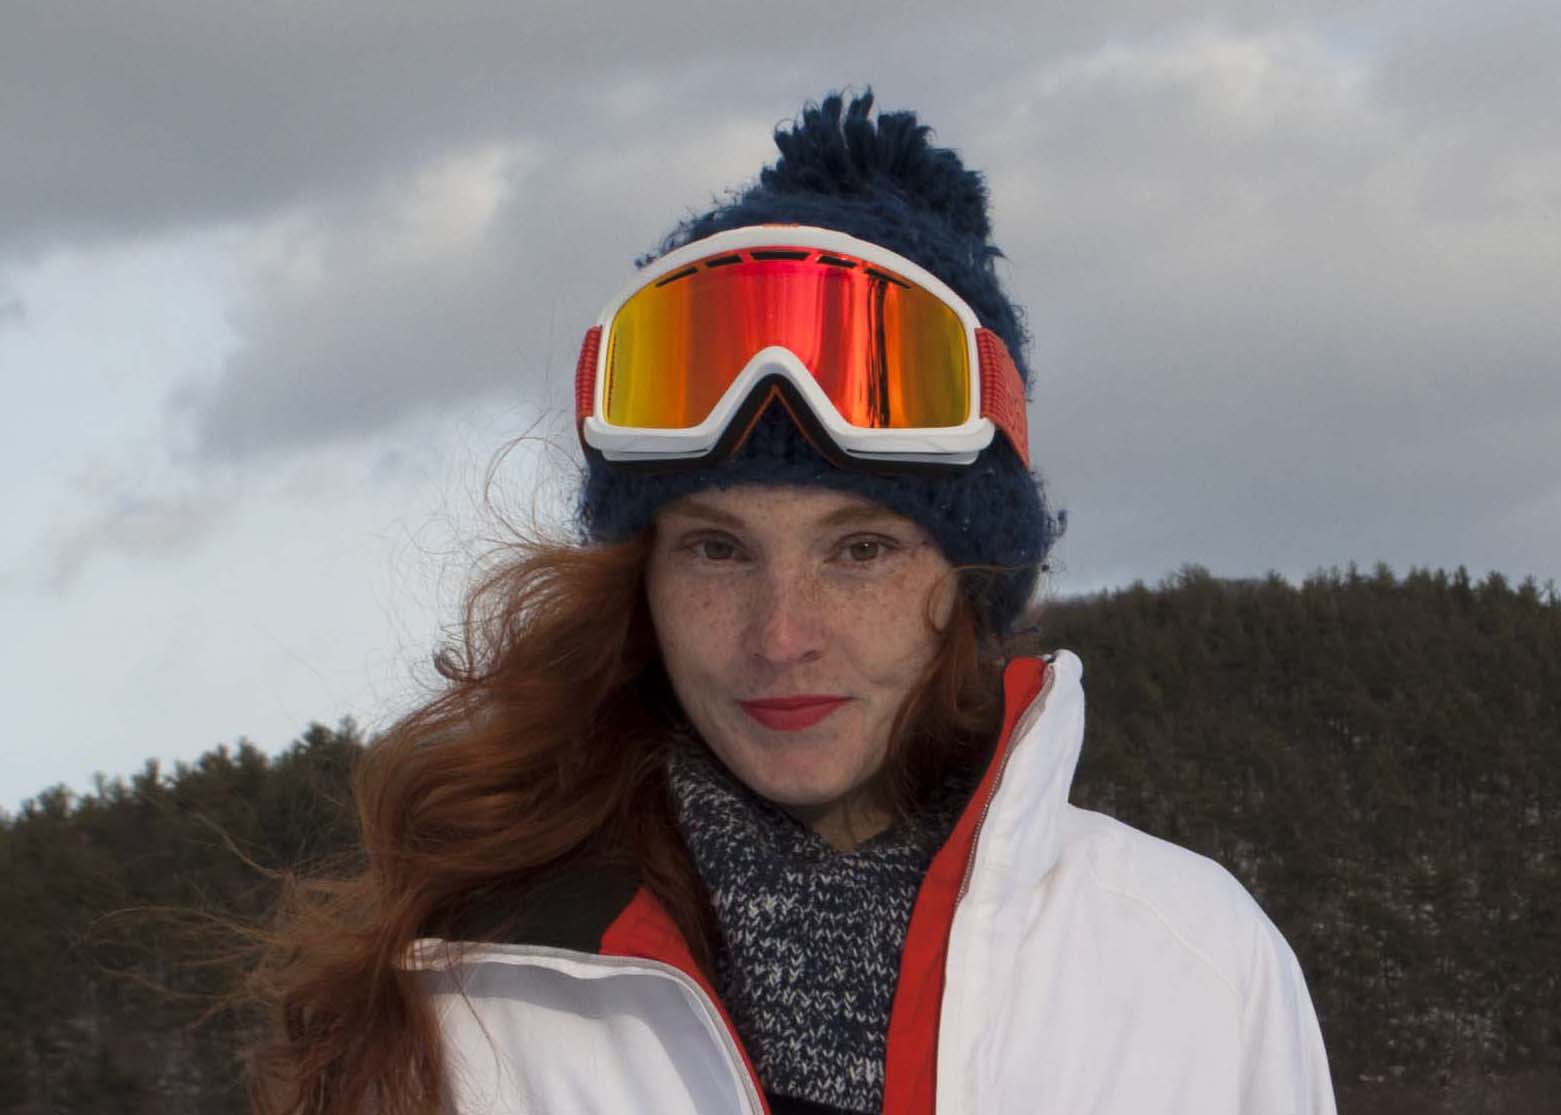 fashionable ski wear on the slopes